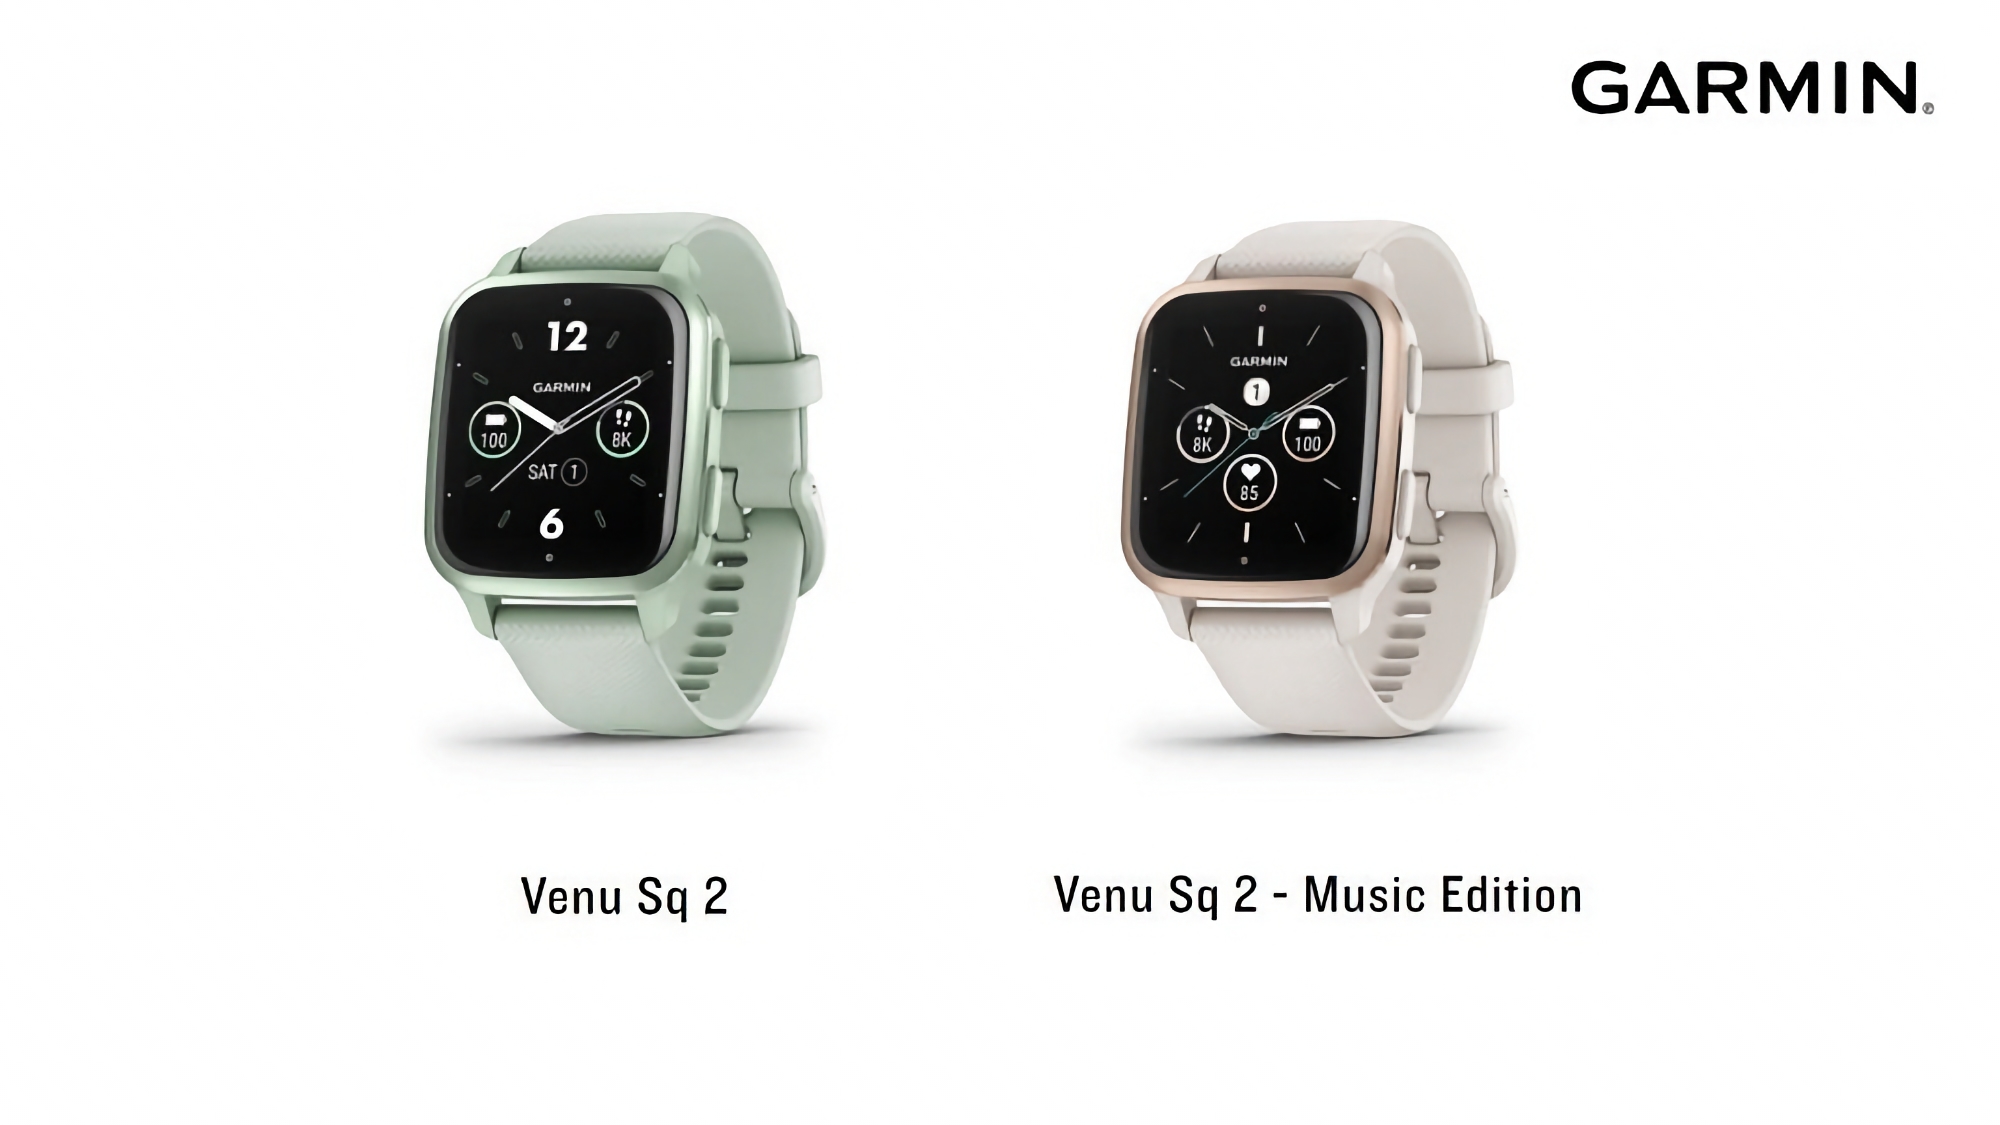 Garmin sta testando un nuovo firmware per gli orologi sportivi Venu Sq 2 e Venu Sq 2 Music Edition